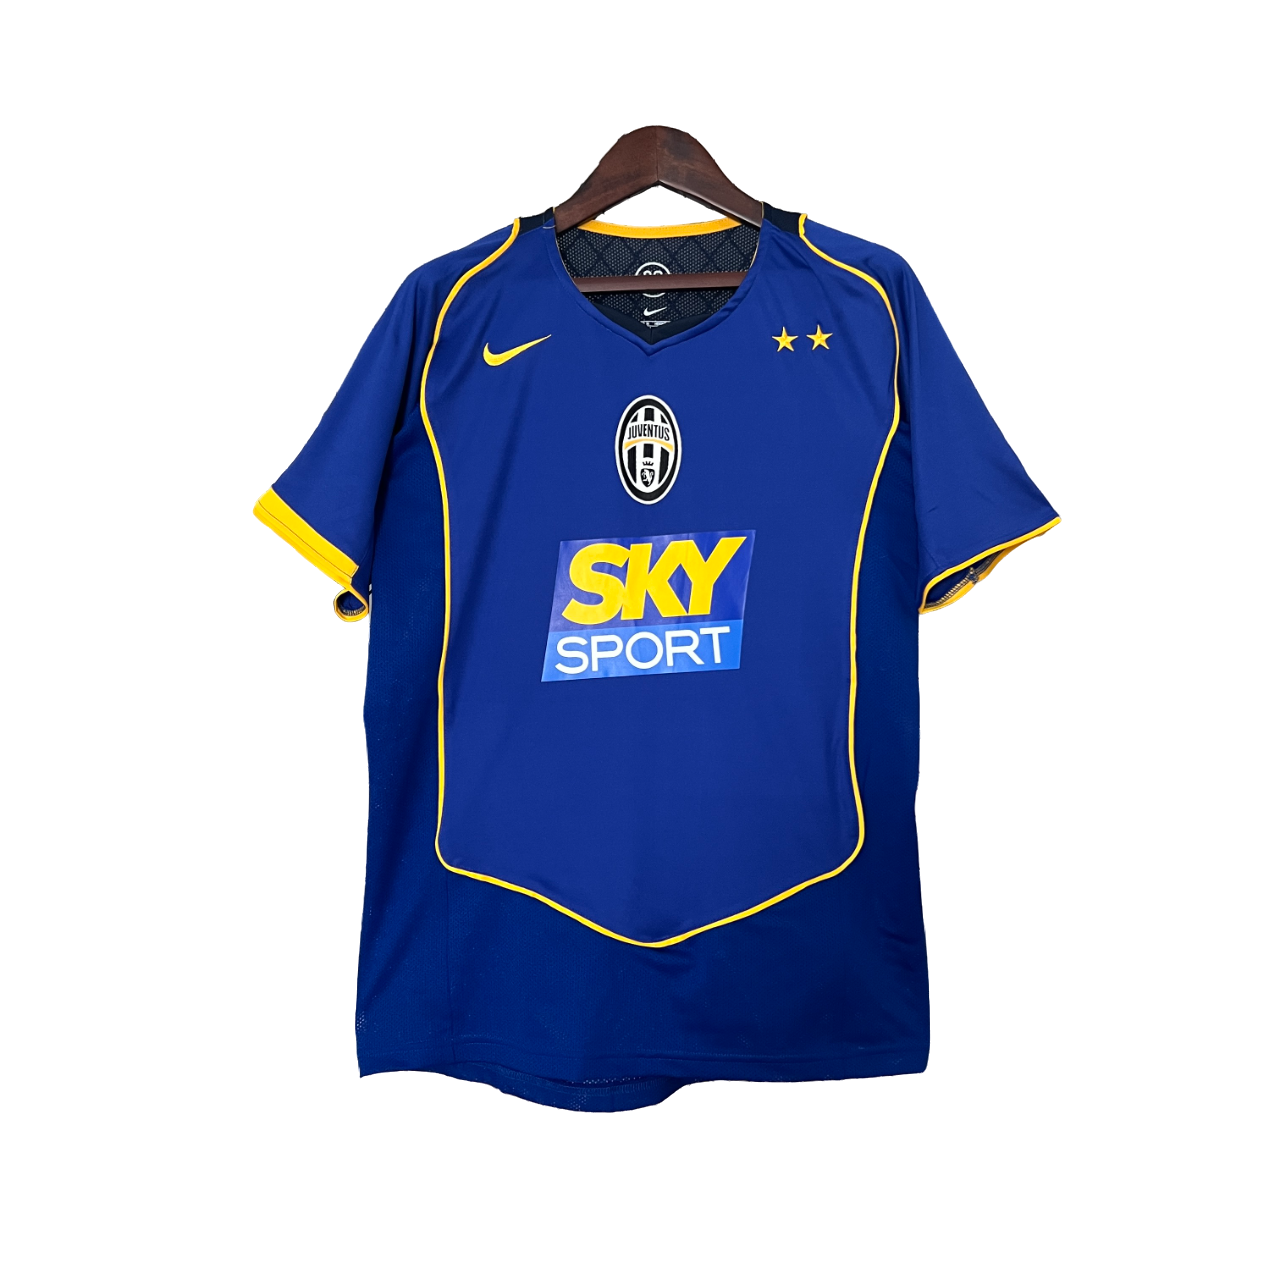 Juventus - 04/05 Vintage